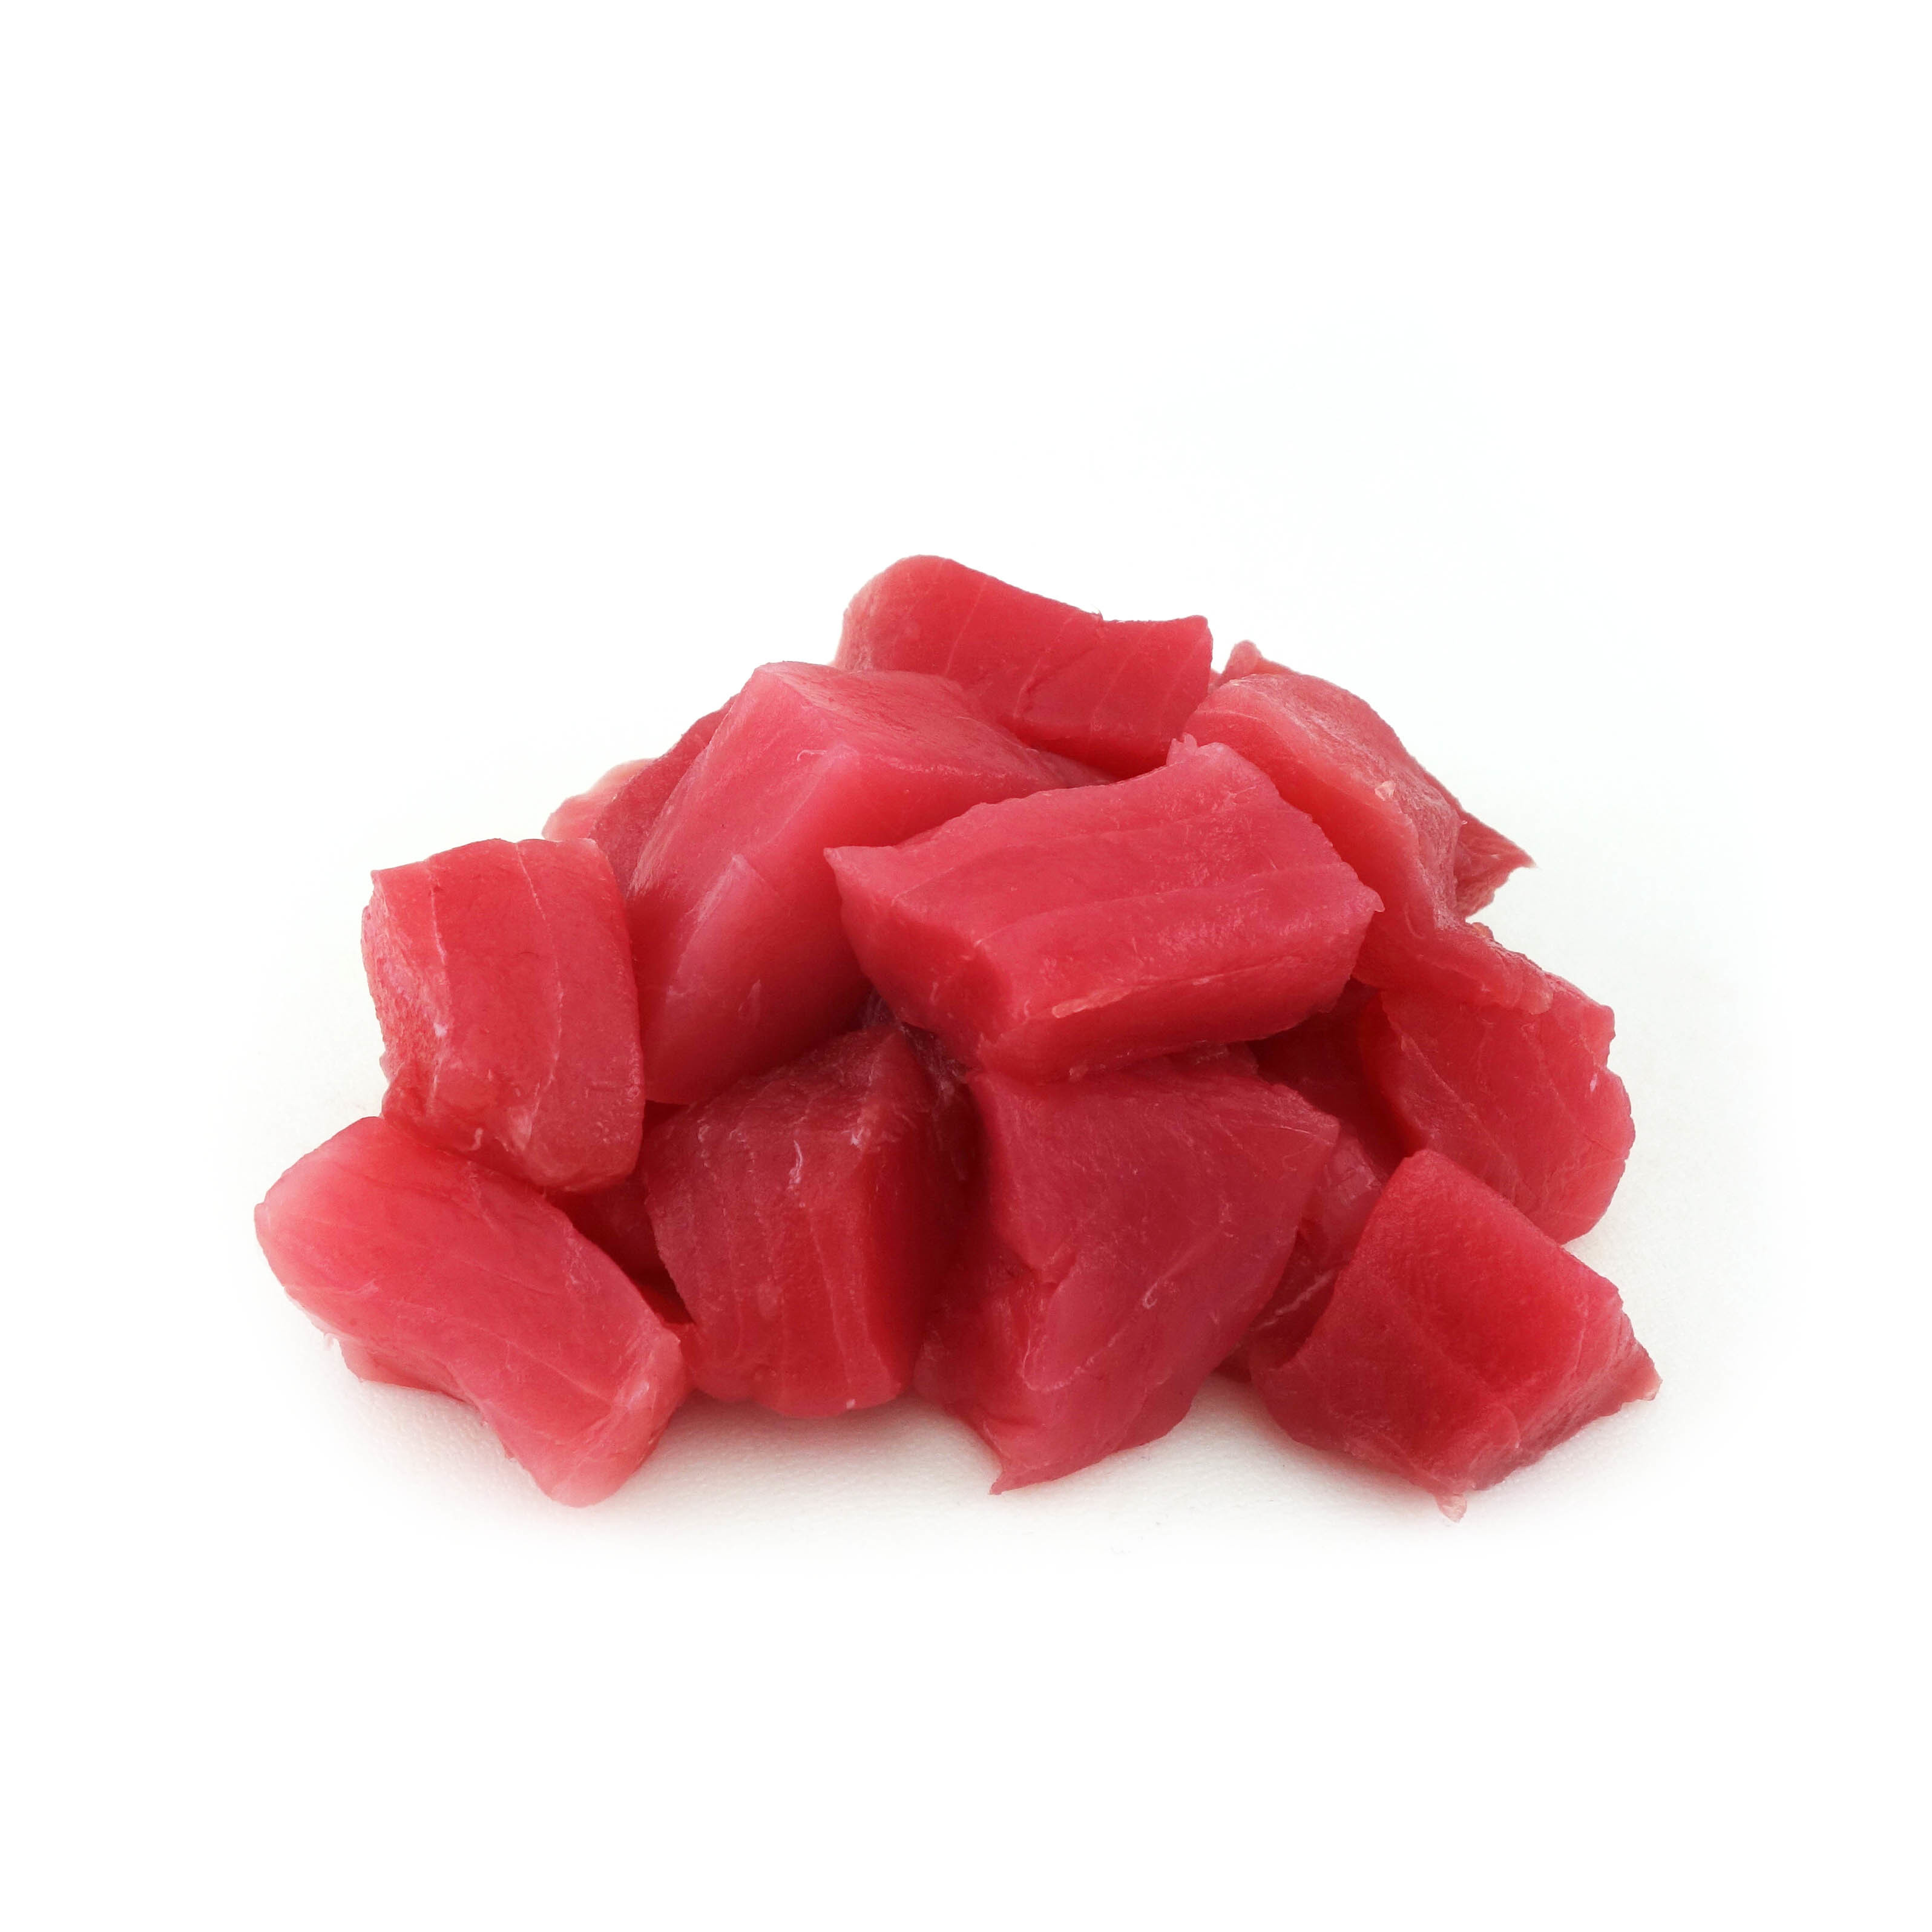 急凍夏威夷黃鰭吞拿魚粒(Yellowfin Tuna) - 串燒用